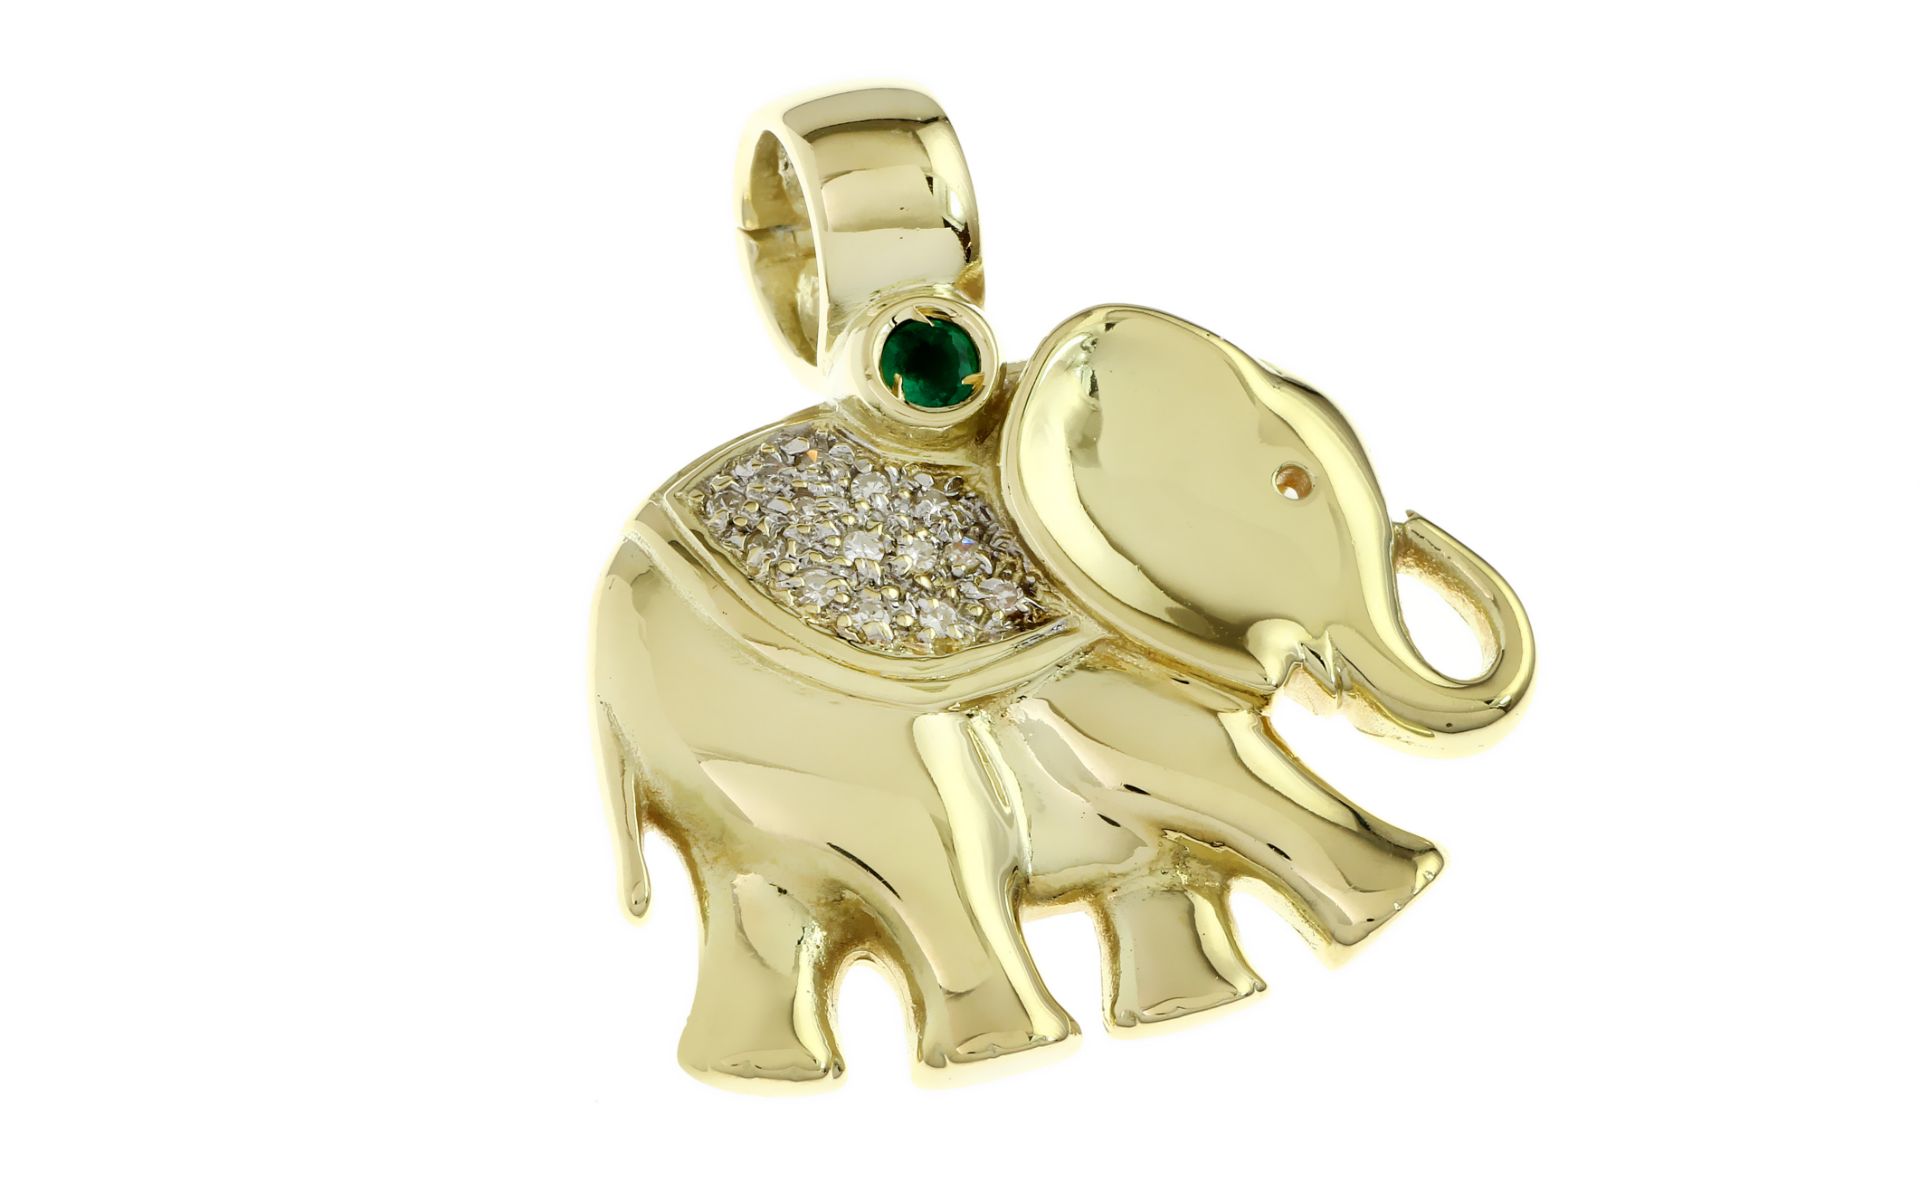 Anhaenger Elefant 11.01g 585/- Gelbgold mit 14 Diamanten zus. ca. 0.21 ct. G/si-pi und Smaragd